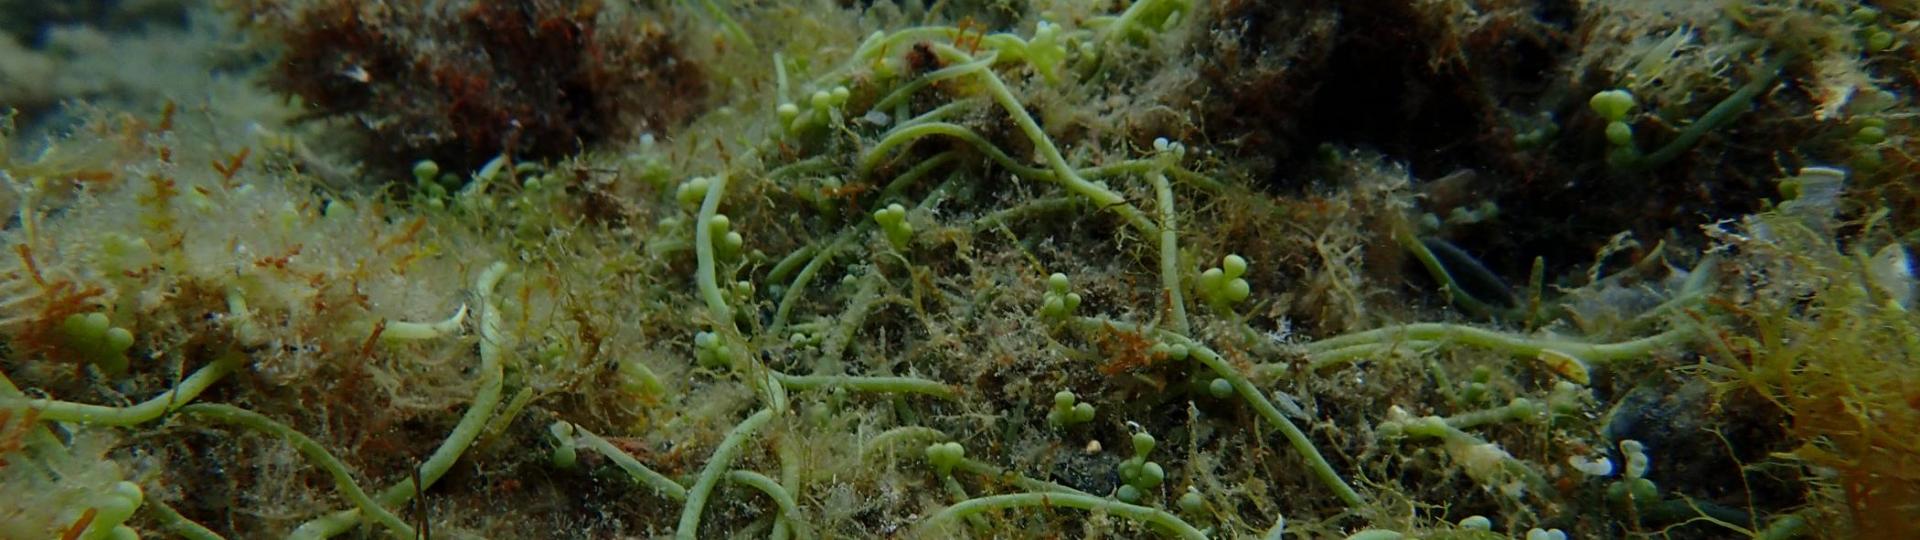 Tapis de l'algue Caulerpa racemosa, espèce exotique